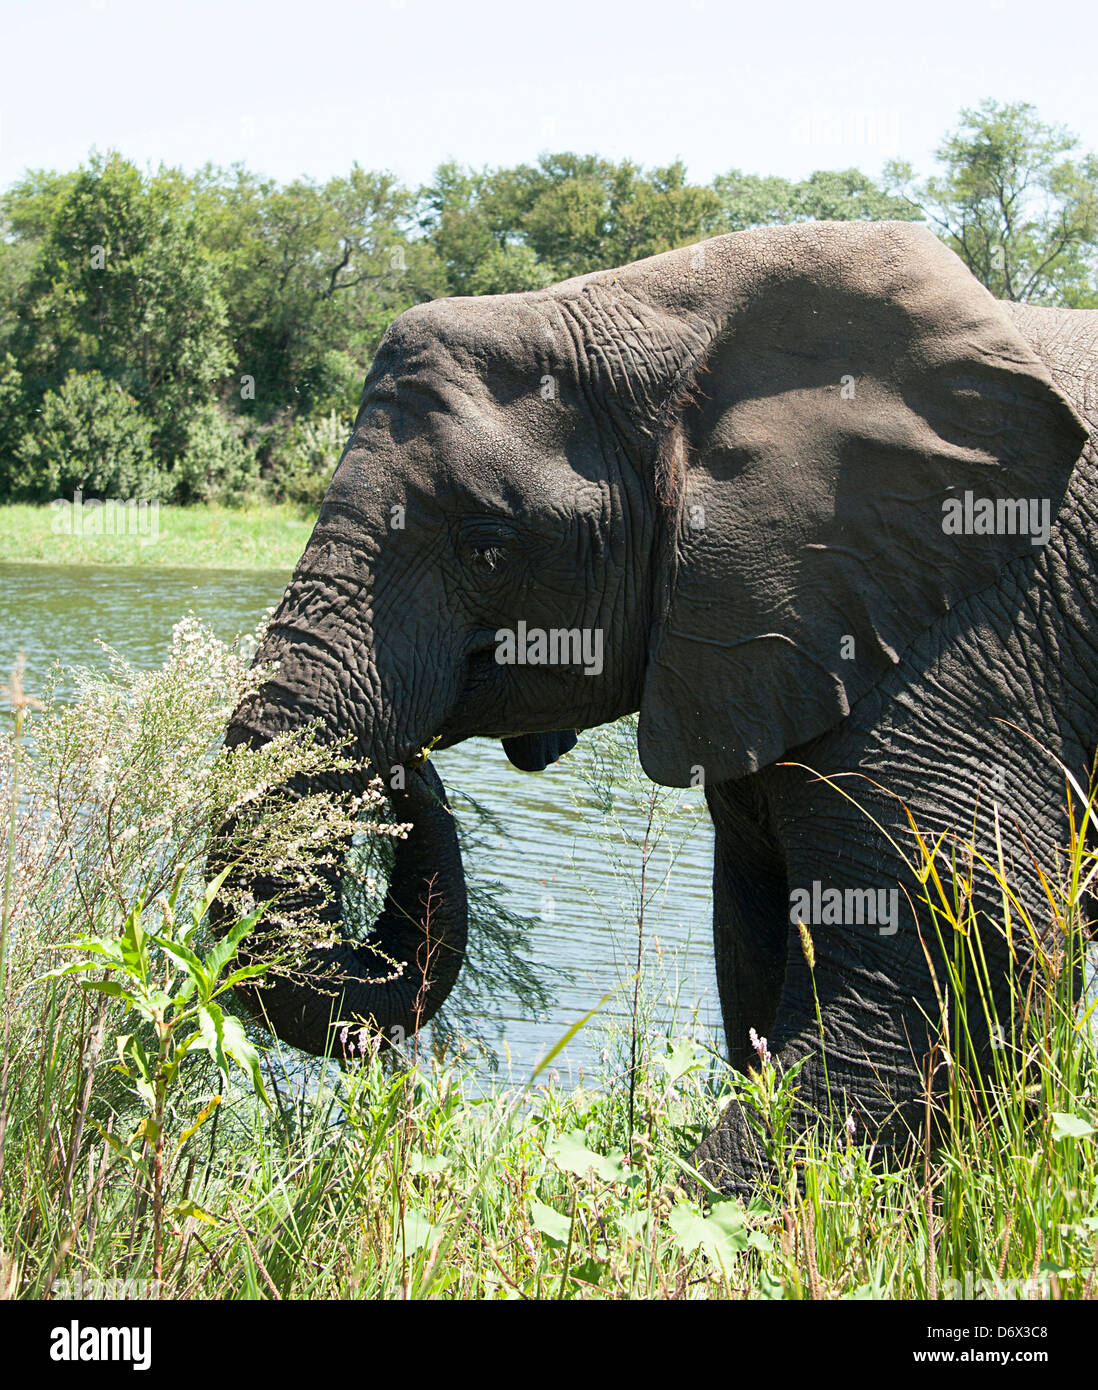 Elephant enjoying habitat near lake. Antelope Park, Zimbabwe. Stock Photo